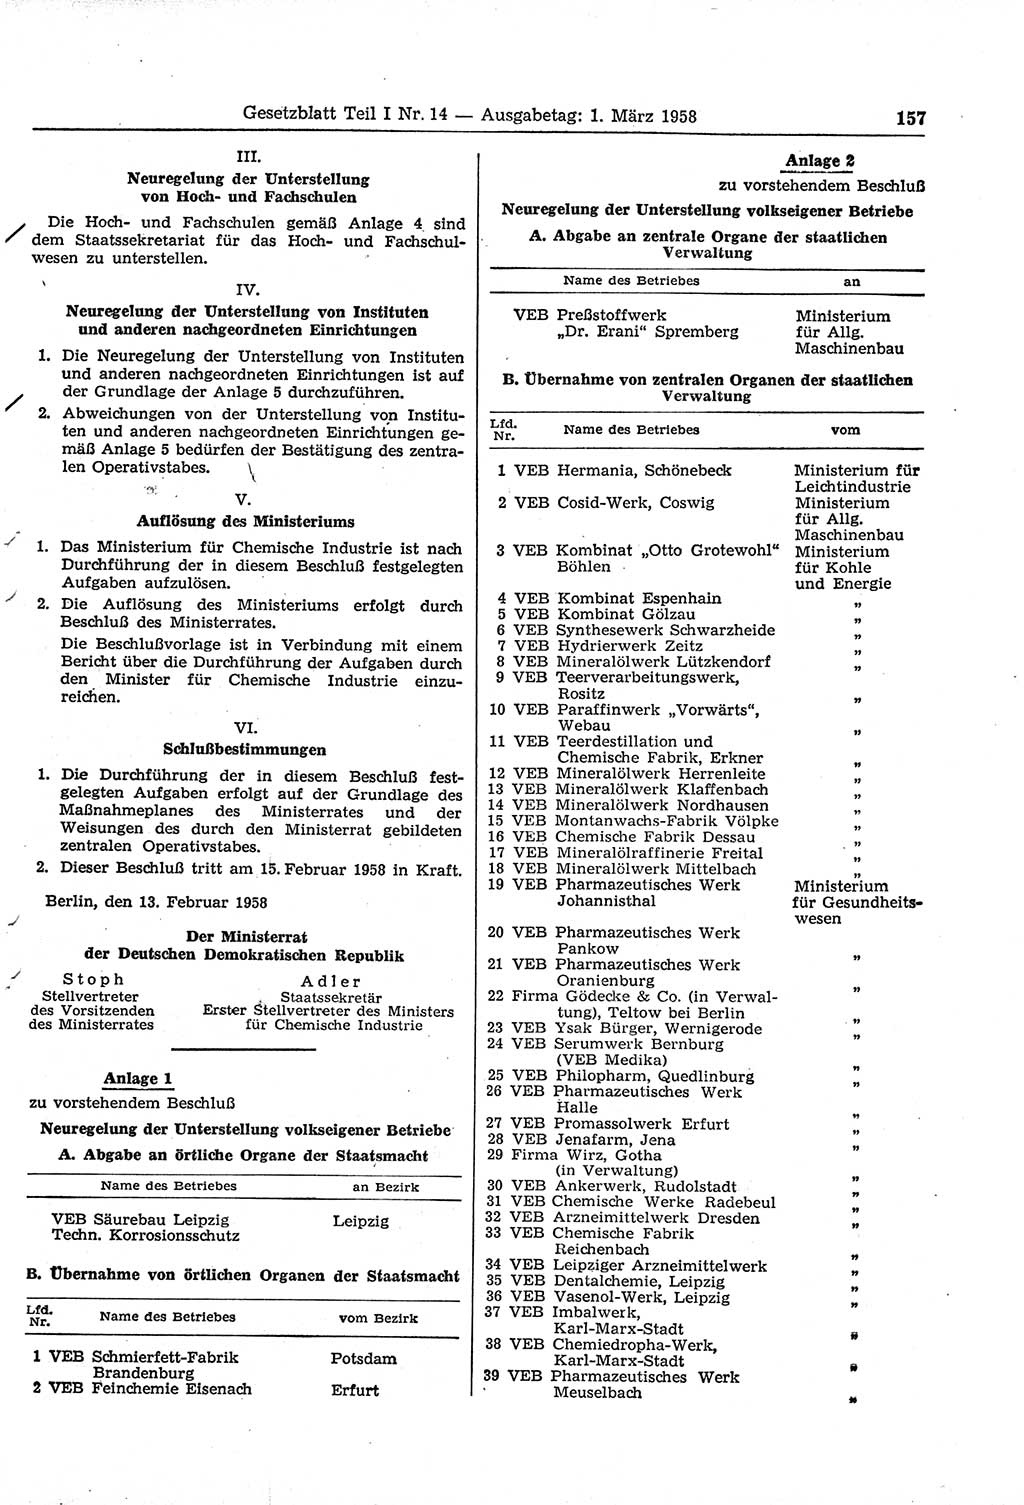 Gesetzblatt (GBl.) der Deutschen Demokratischen Republik (DDR) Teil Ⅰ 1958, Seite 157 (GBl. DDR Ⅰ 1958, S. 157)